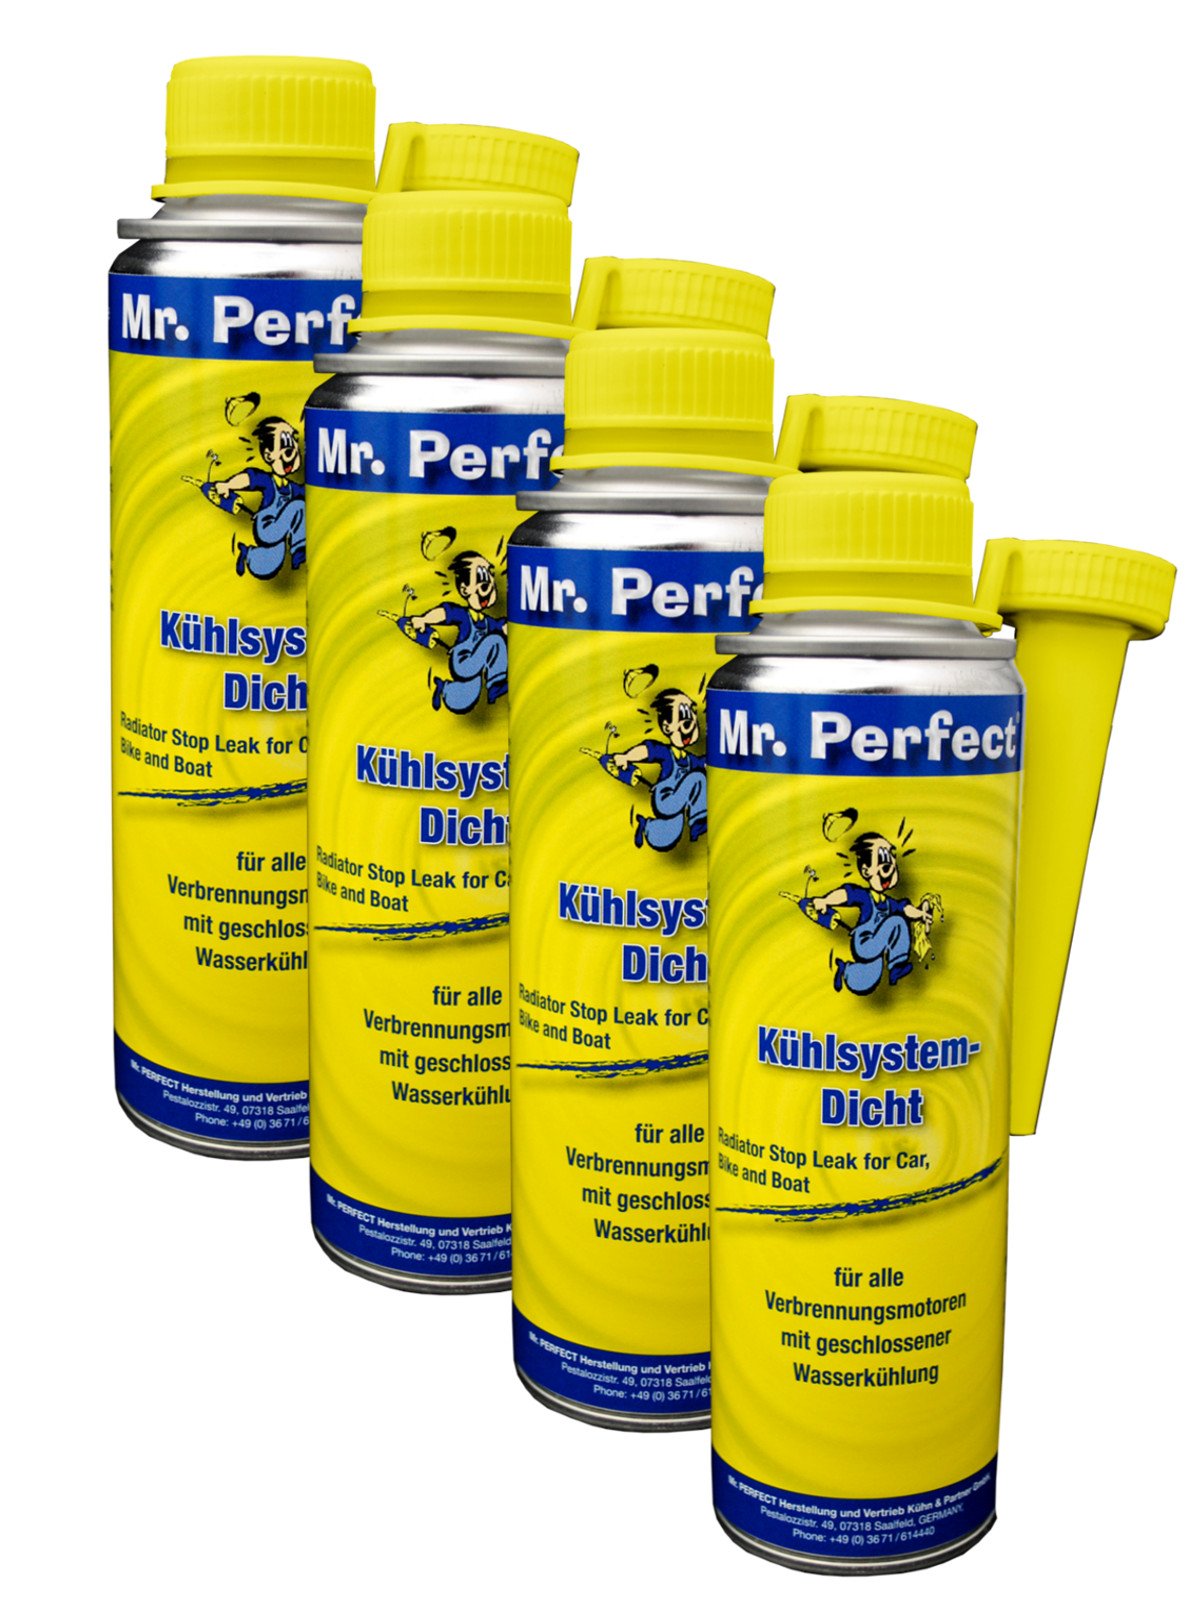 Mr. Perfect® Kühlsystemdicht, 4 x 250 ml - Kfz Kühldichtmittel-Additiv für alle Verbrennungsmotoren mit Wasserkühlung geeignet von Mr. Perfect